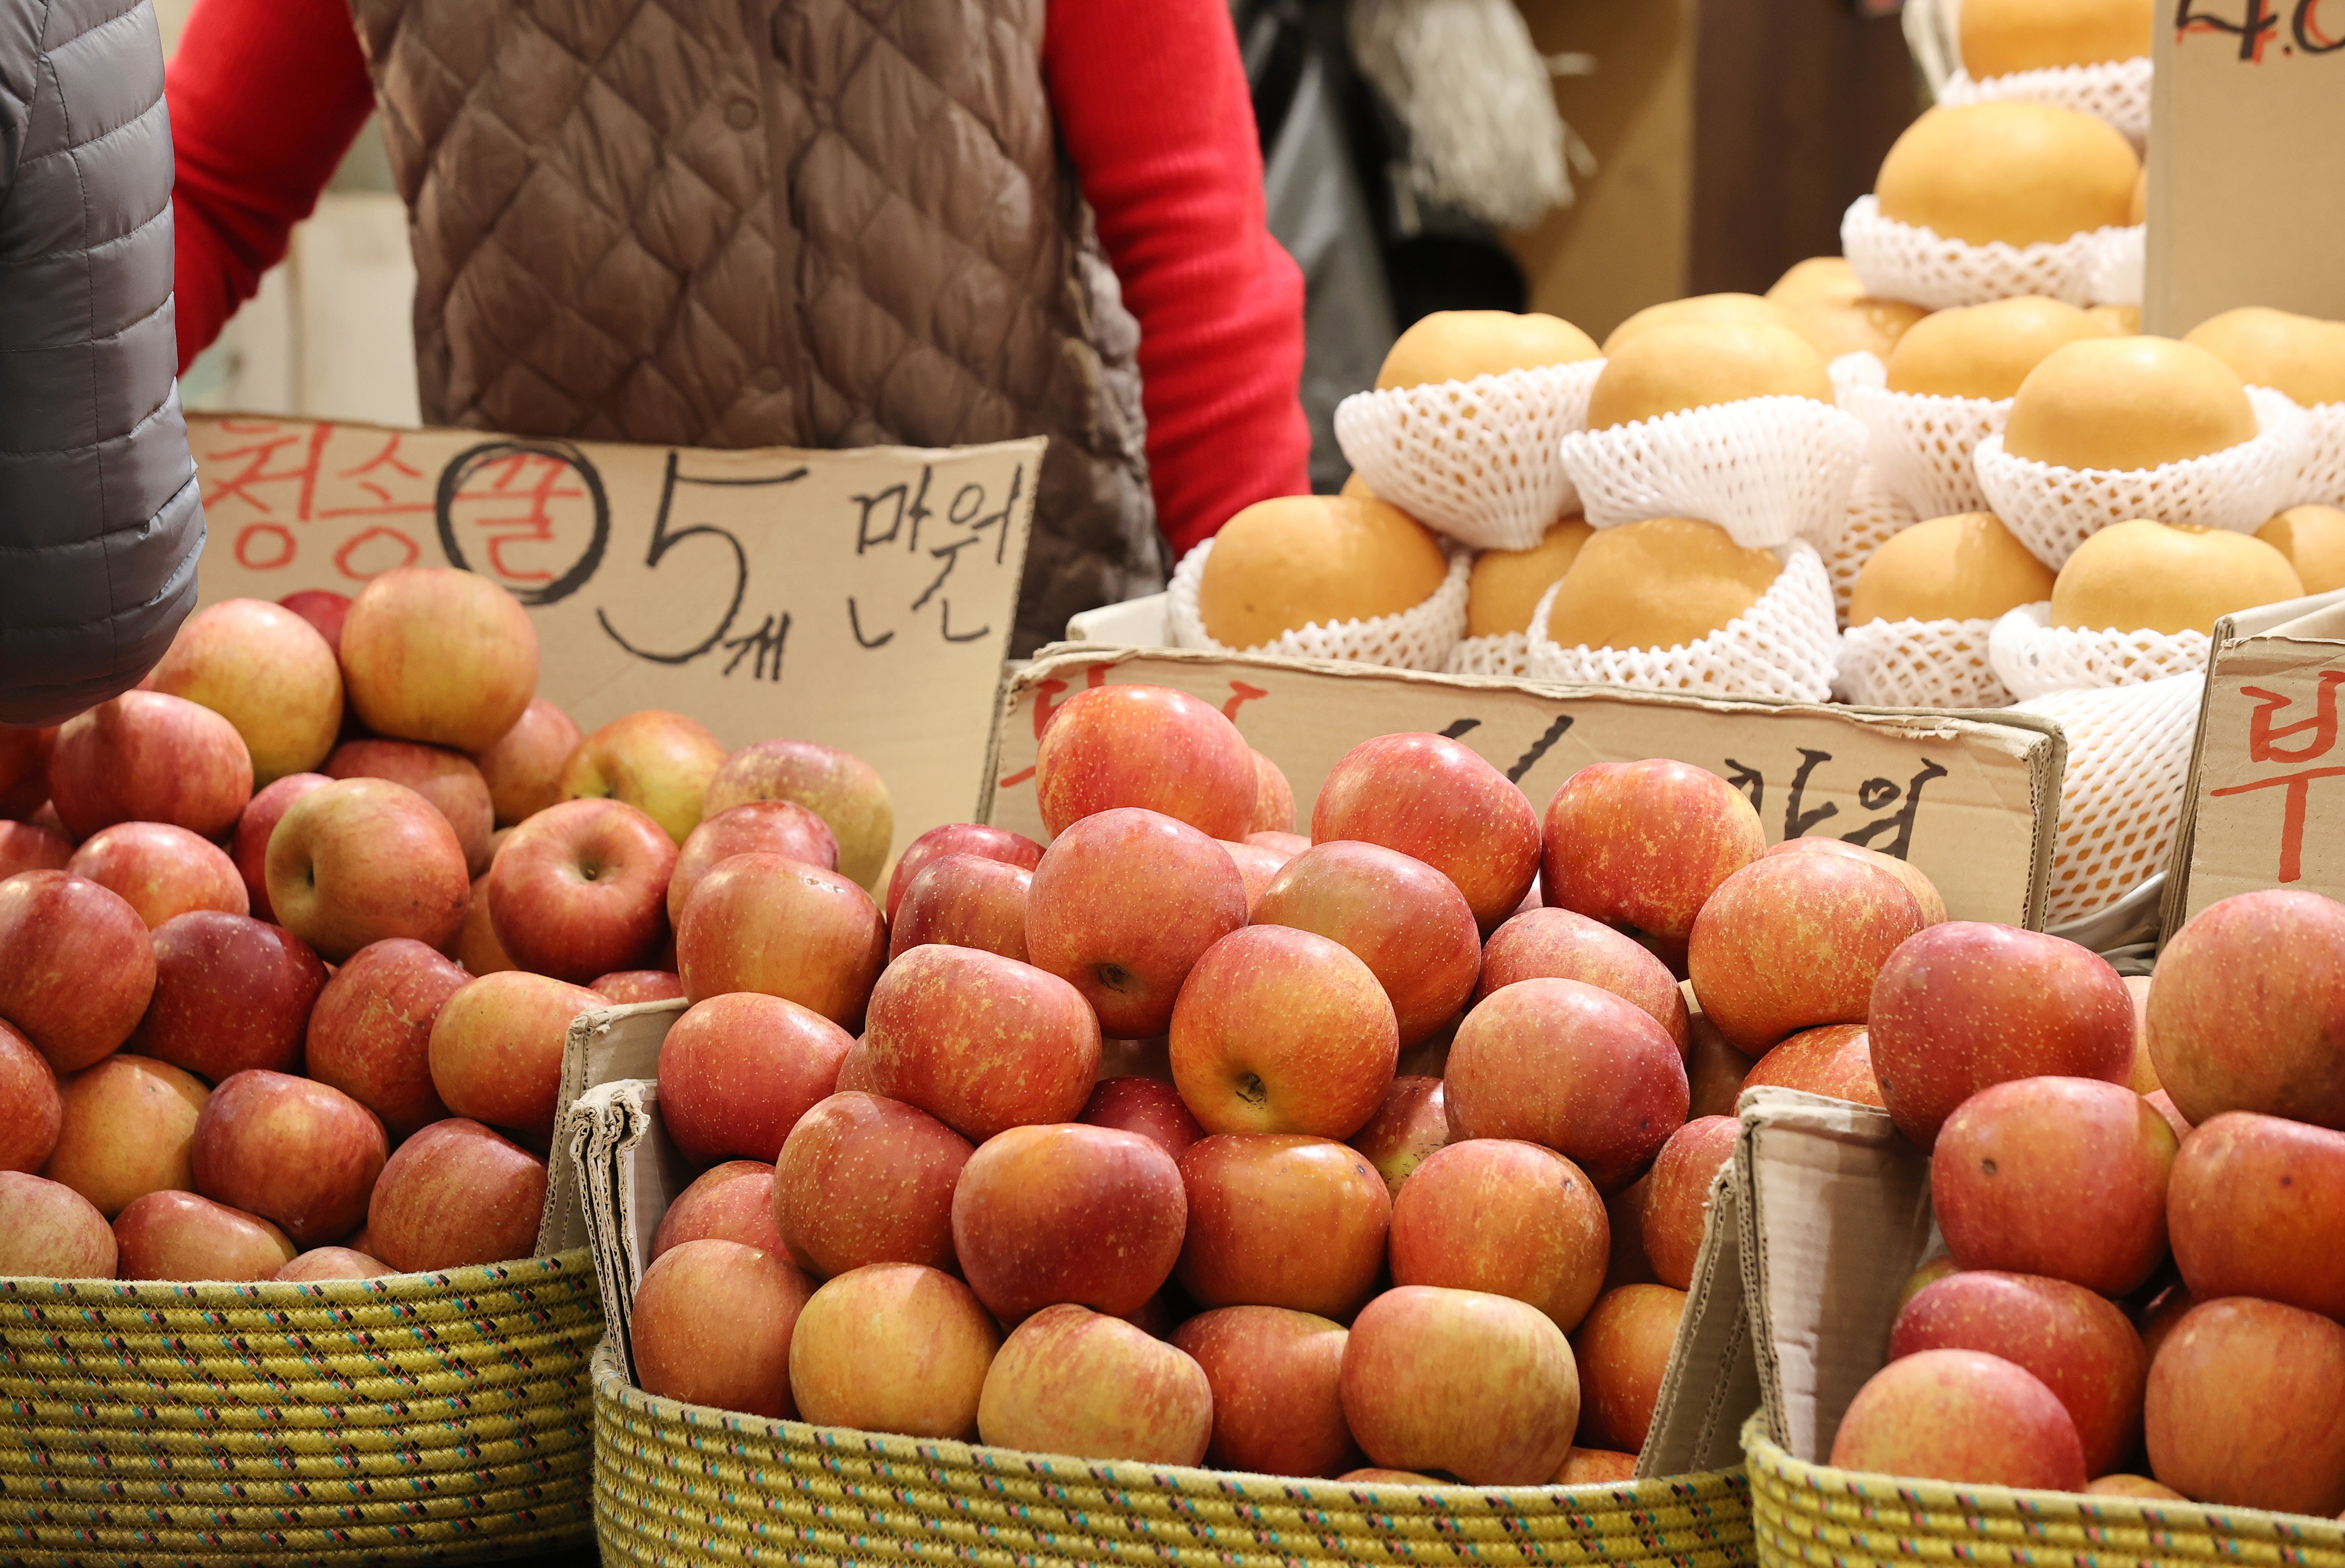 통계청이 ‘3월 소비자물가동향’을 발표한 2일 서울의 한 전통시장에 사과가 진열돼 있다. 지난달 사과 물가가 지난해 같은 달보다 88.2%, 배는 87.8%가 올라 관련 통계 집계를 시작한 이후 가장 높은 상승률을 기록했다. 연합뉴스